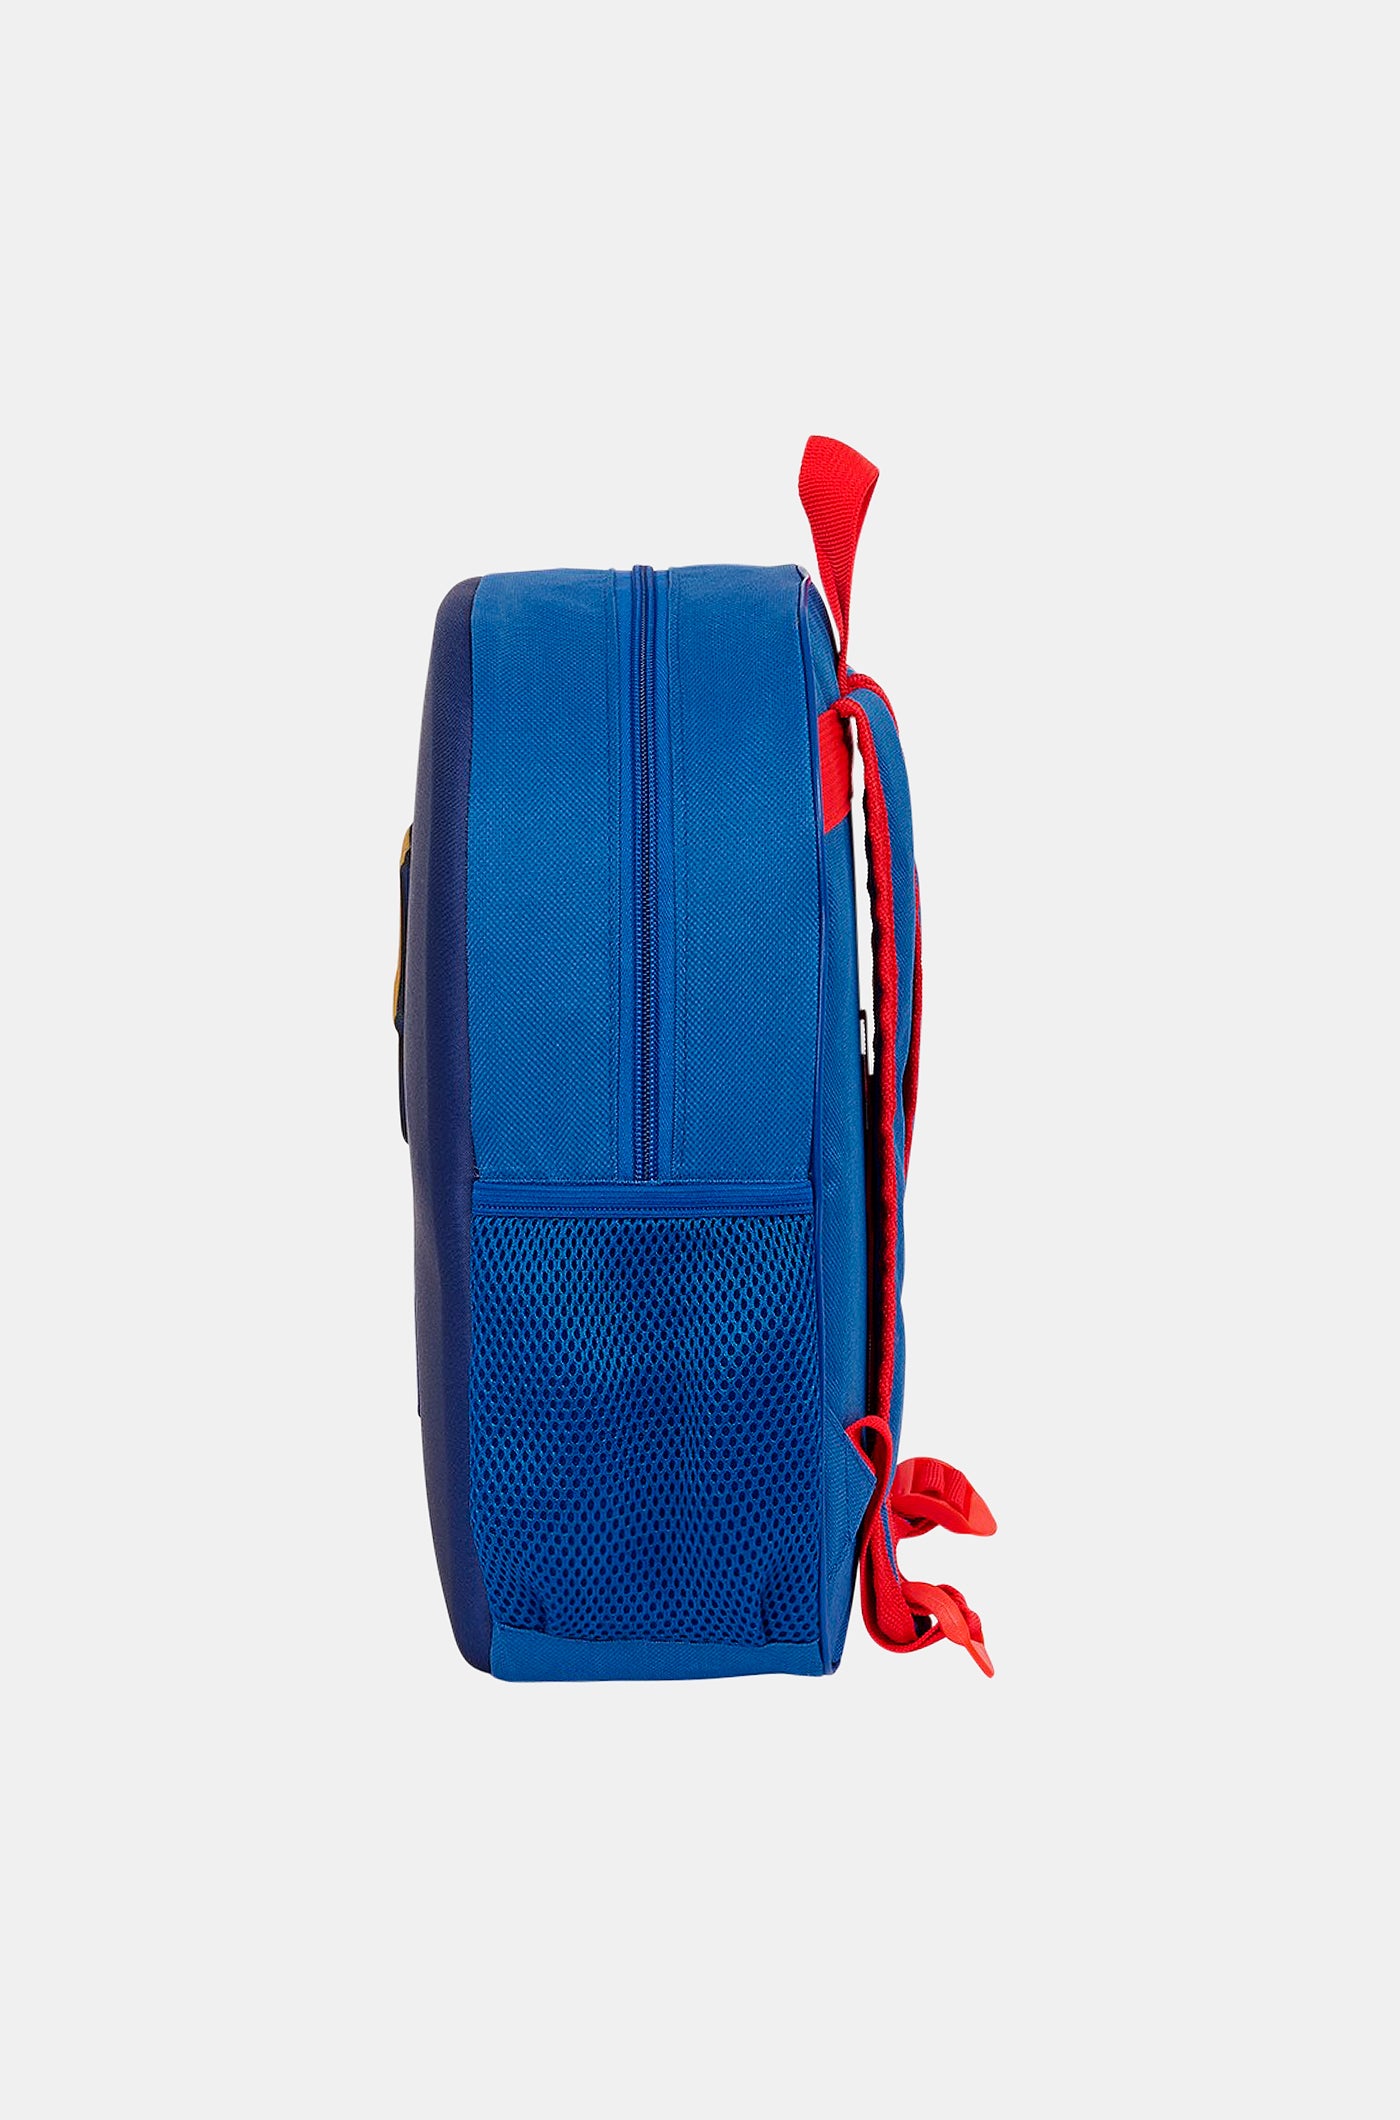 Blauer Rucksack mit Barça-Schild